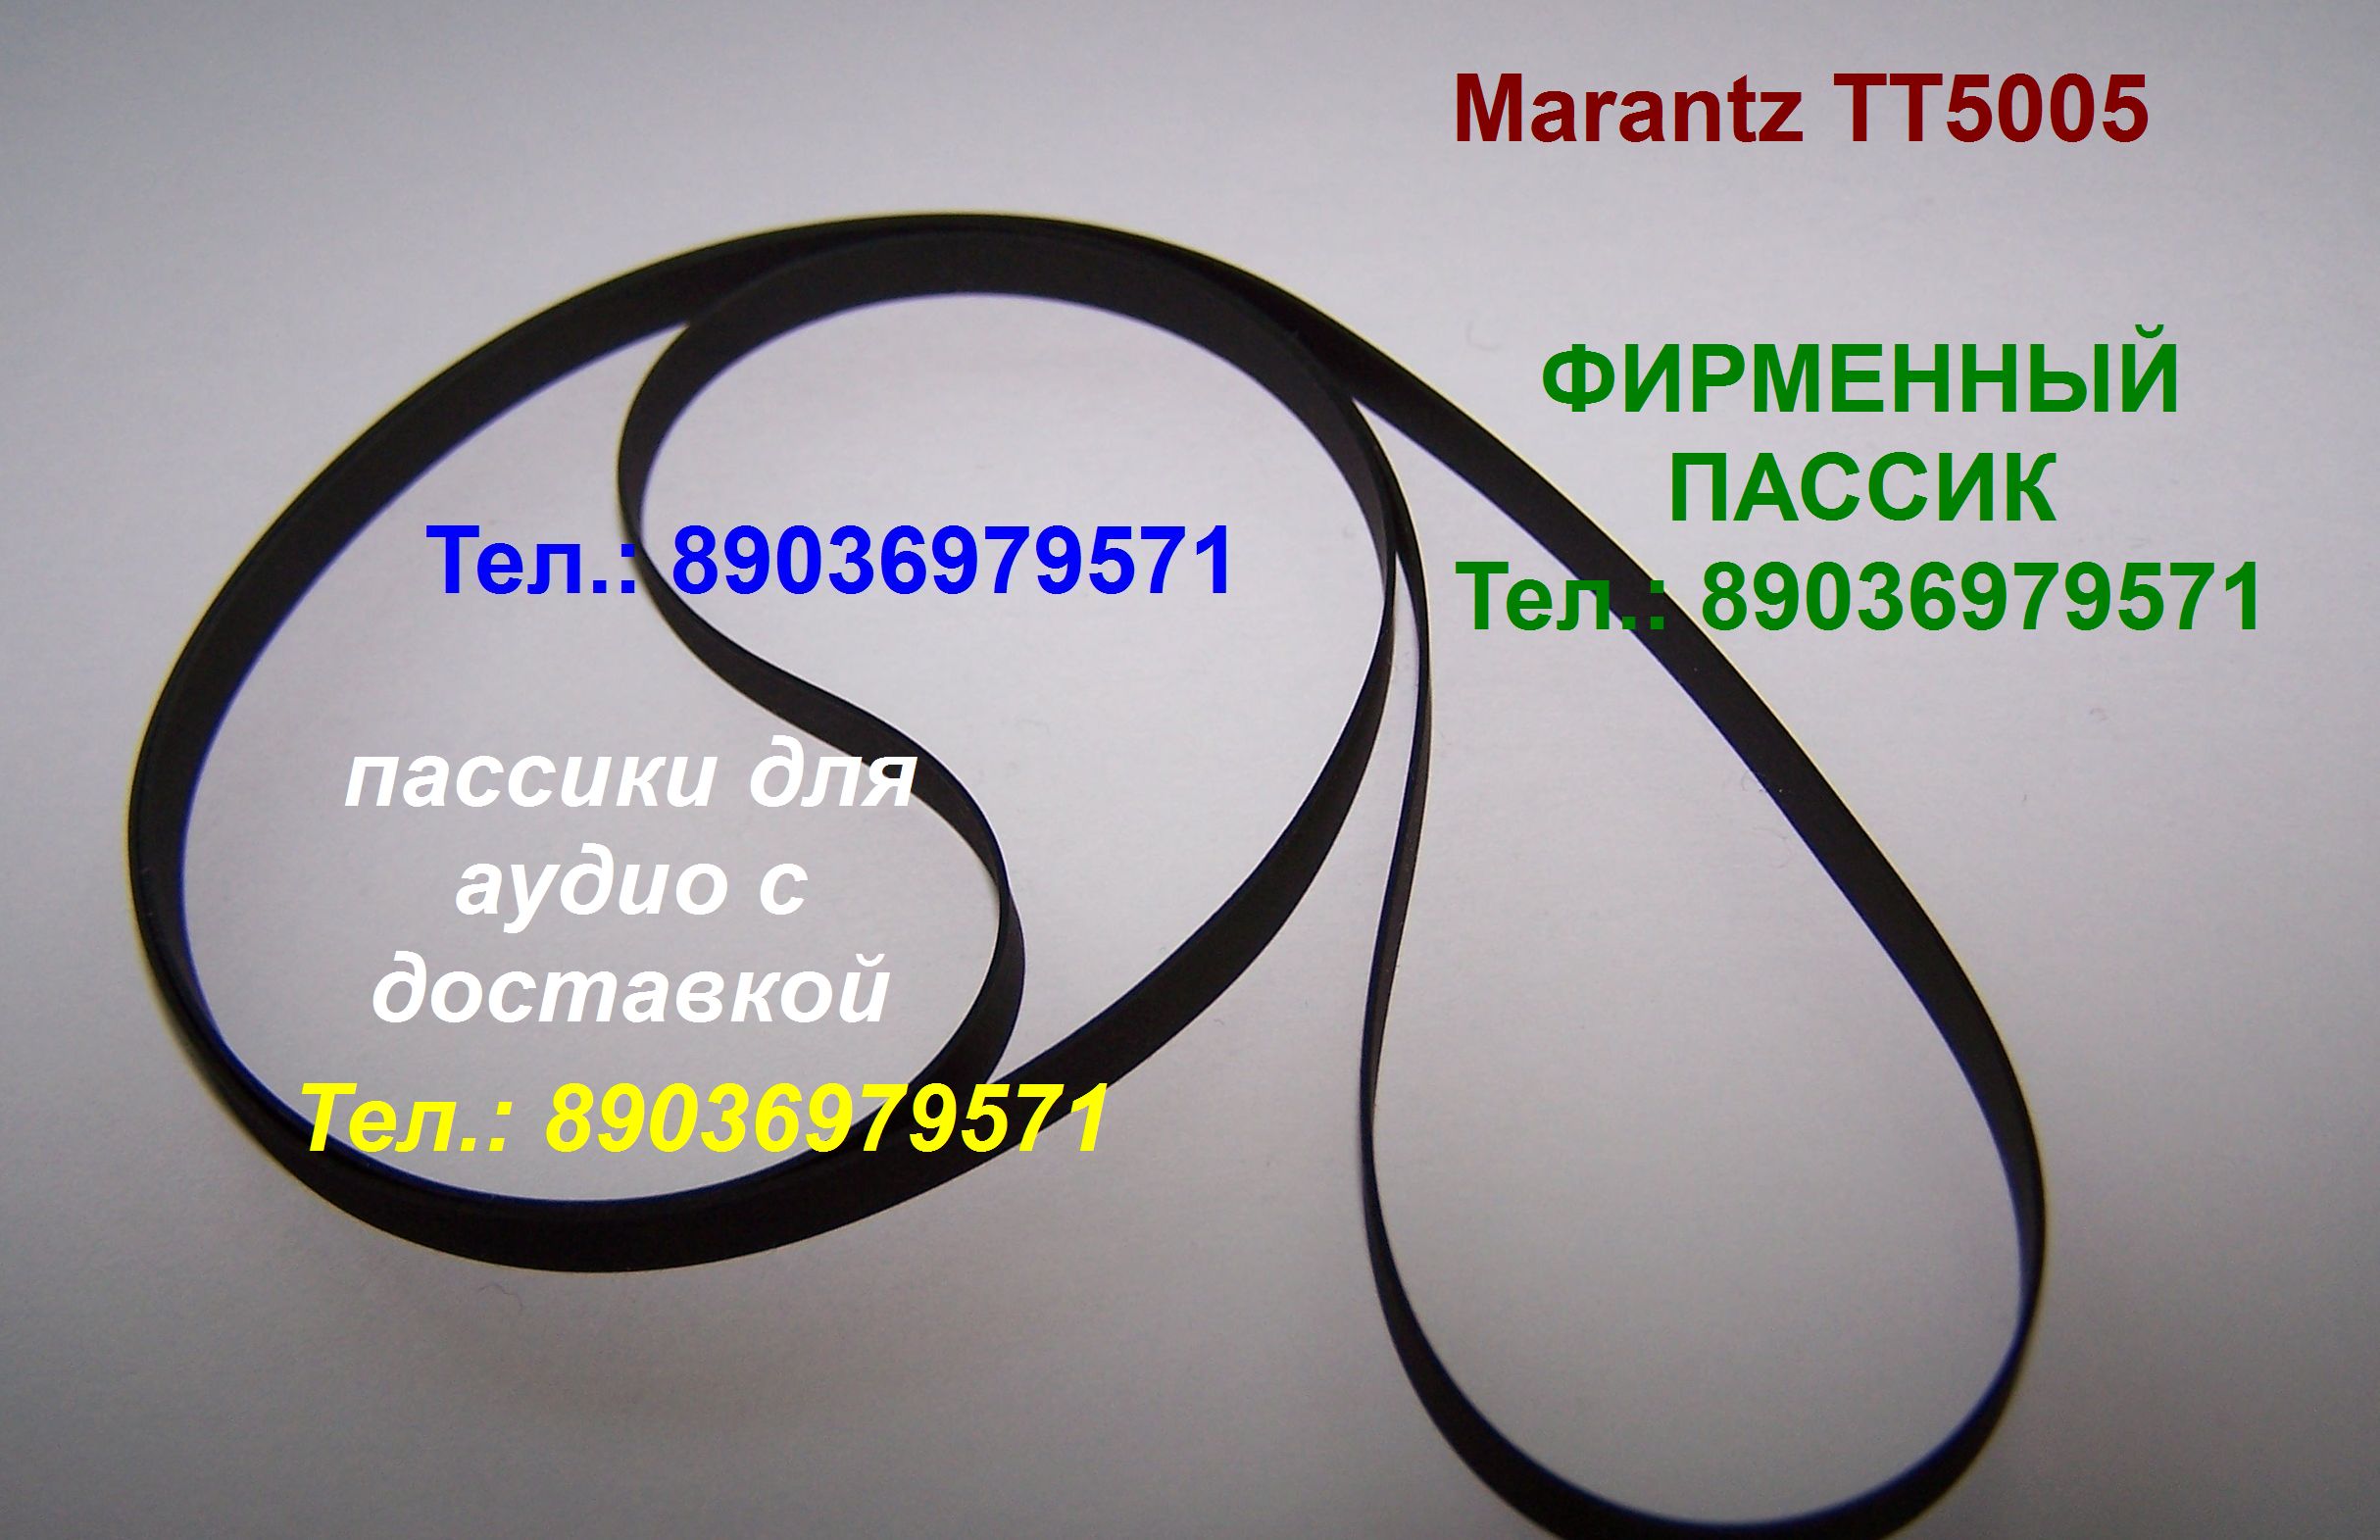 пассик для Marantz TT5005 ремень пасик для Маранц TT 5005 в городе Москва, фото 1, Московская область